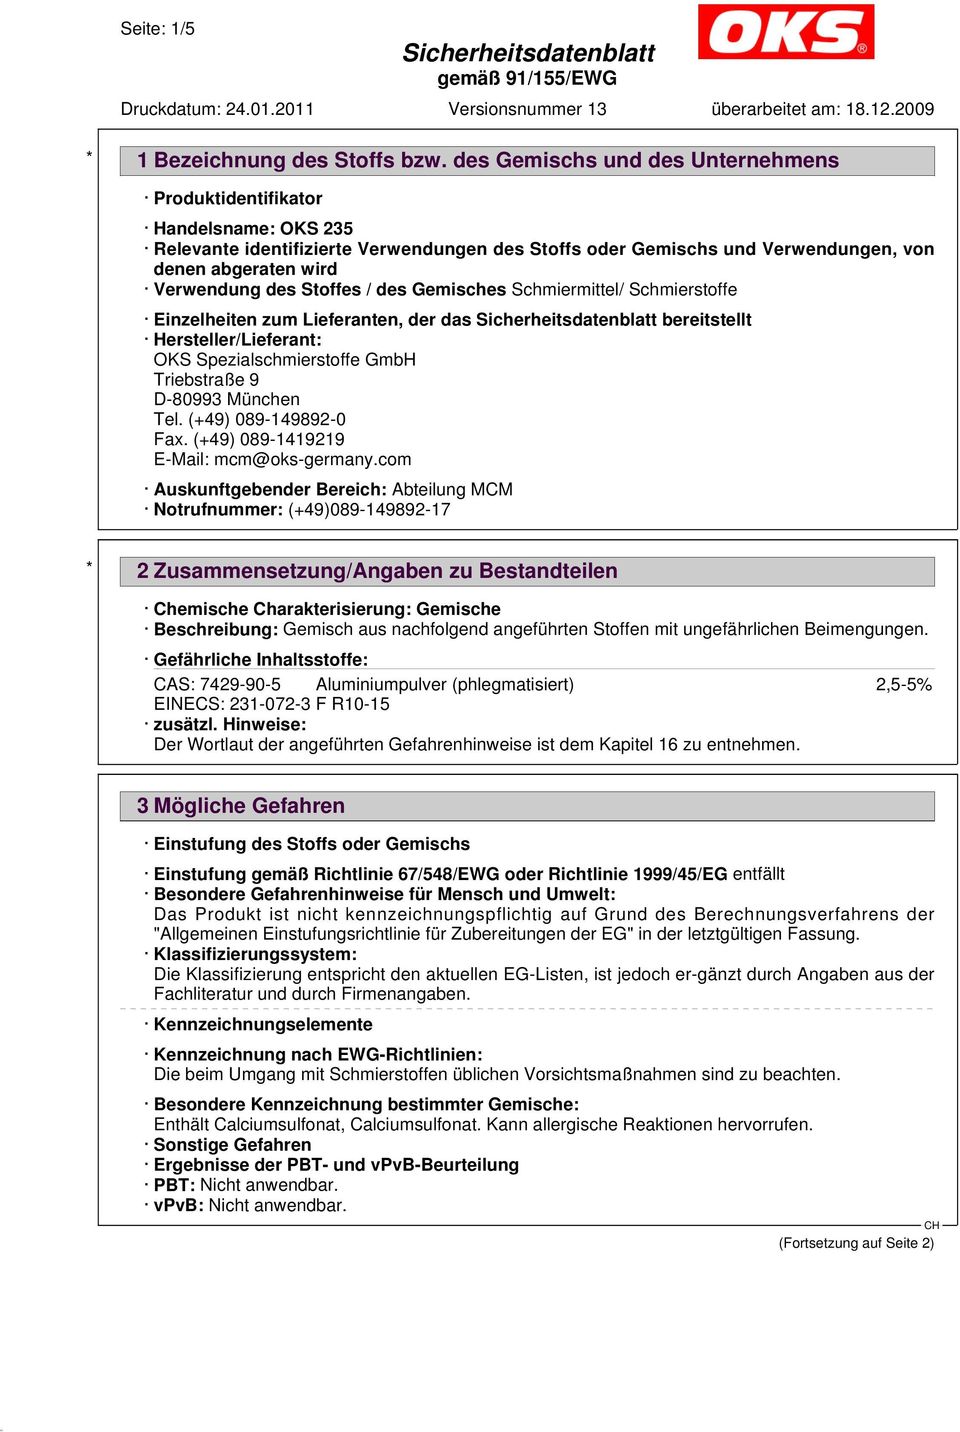 Schmiermittel/ Schmierstoffe Einzelheiten zum Lieferanten, der das bereitstellt Hersteller/Lieferant: OKS Spezialschmierstoffe GmbH Triebstraße 9 D-80993 München Tel. (+49) 089-149892-0 Fax.